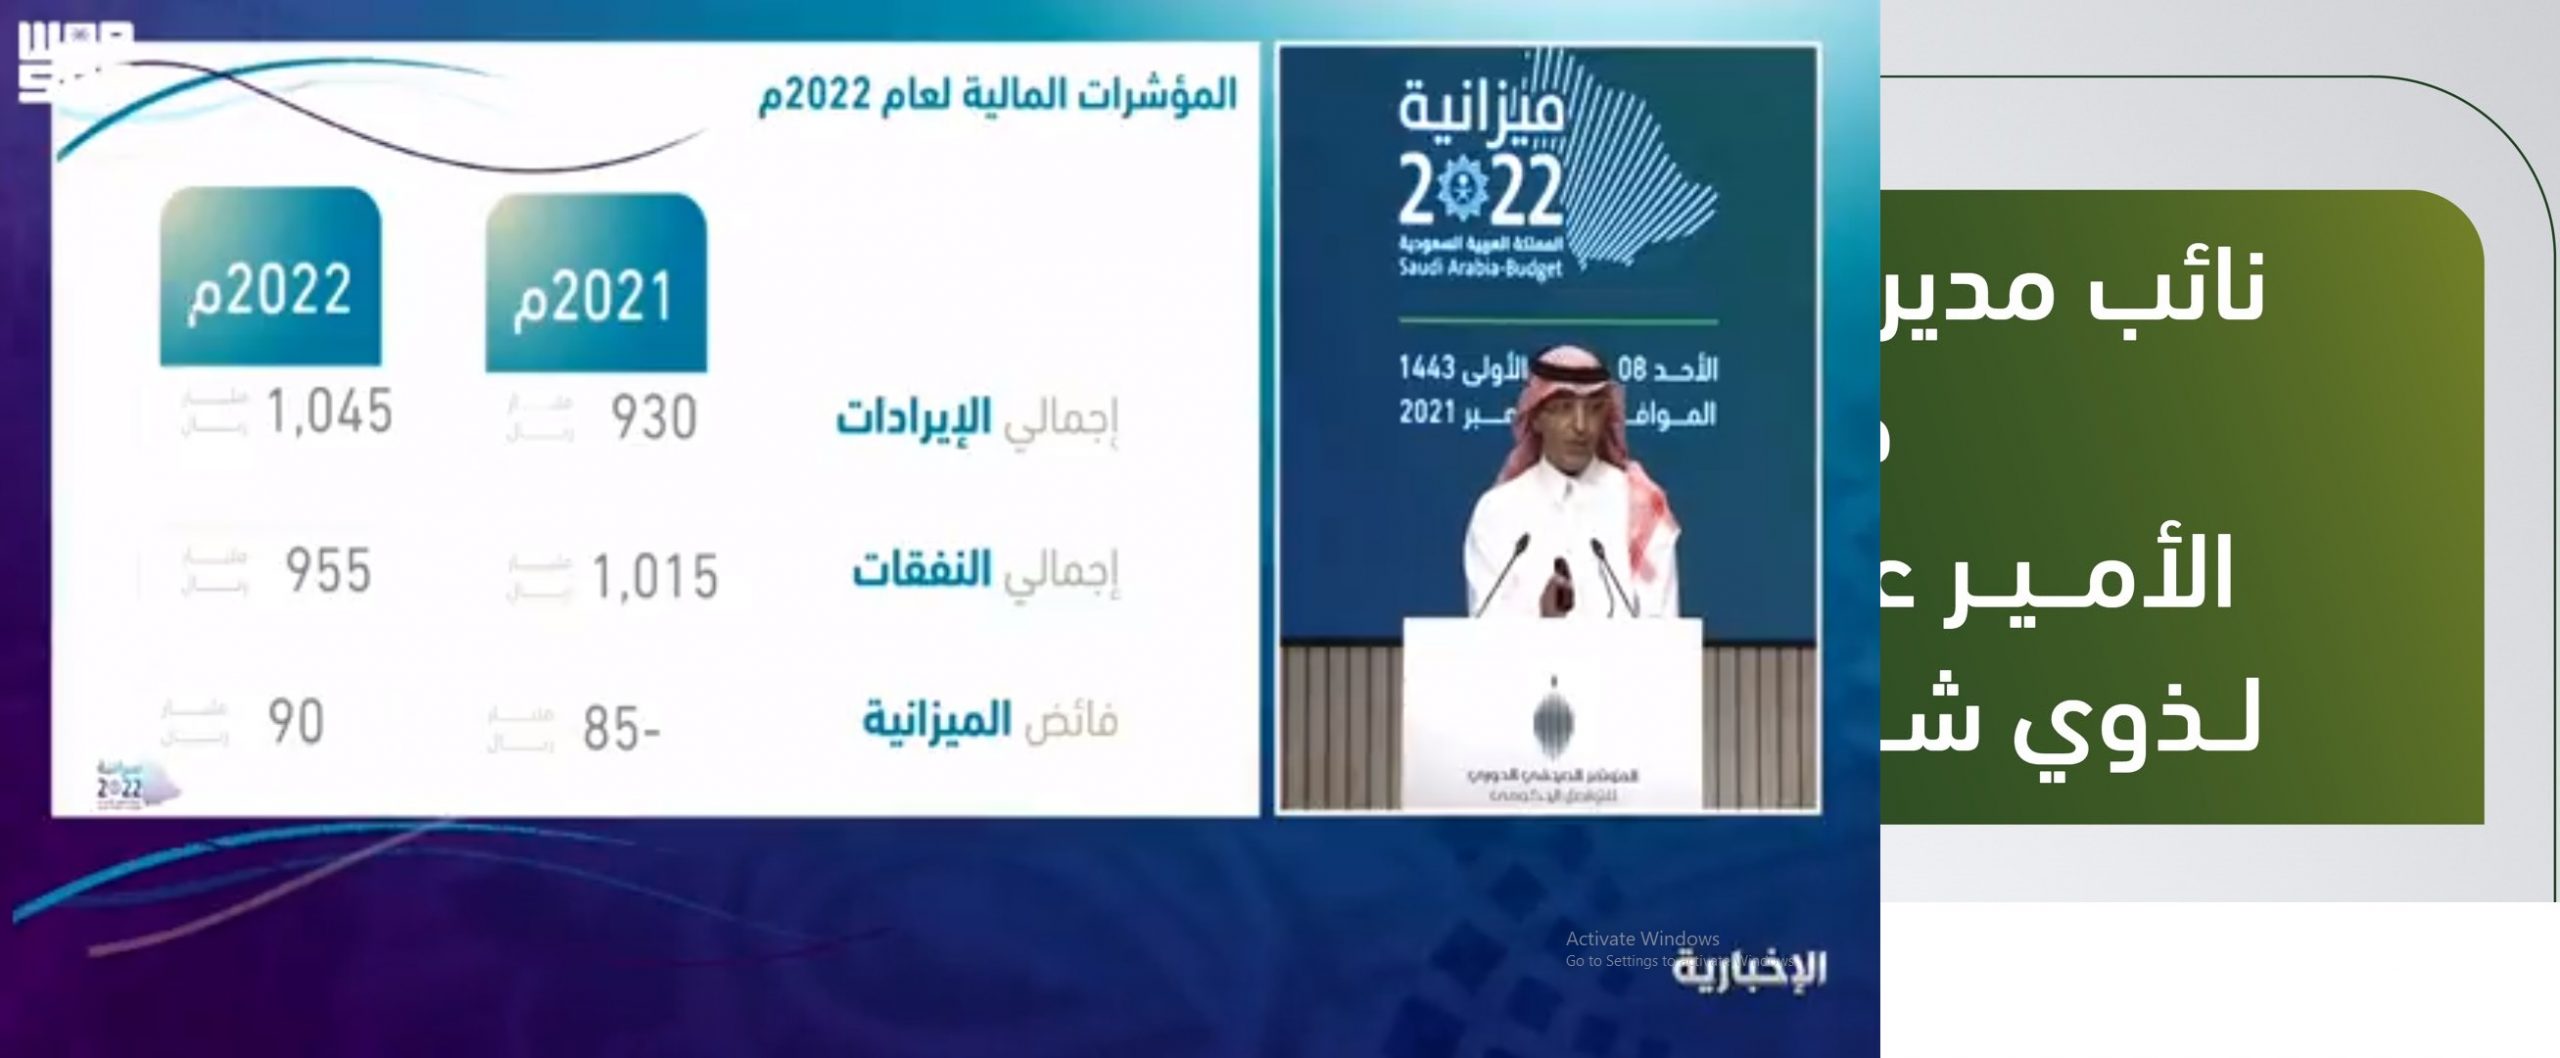 وزير المالية: الناتج غير النفطي سينمو 4.8% في عام 2022